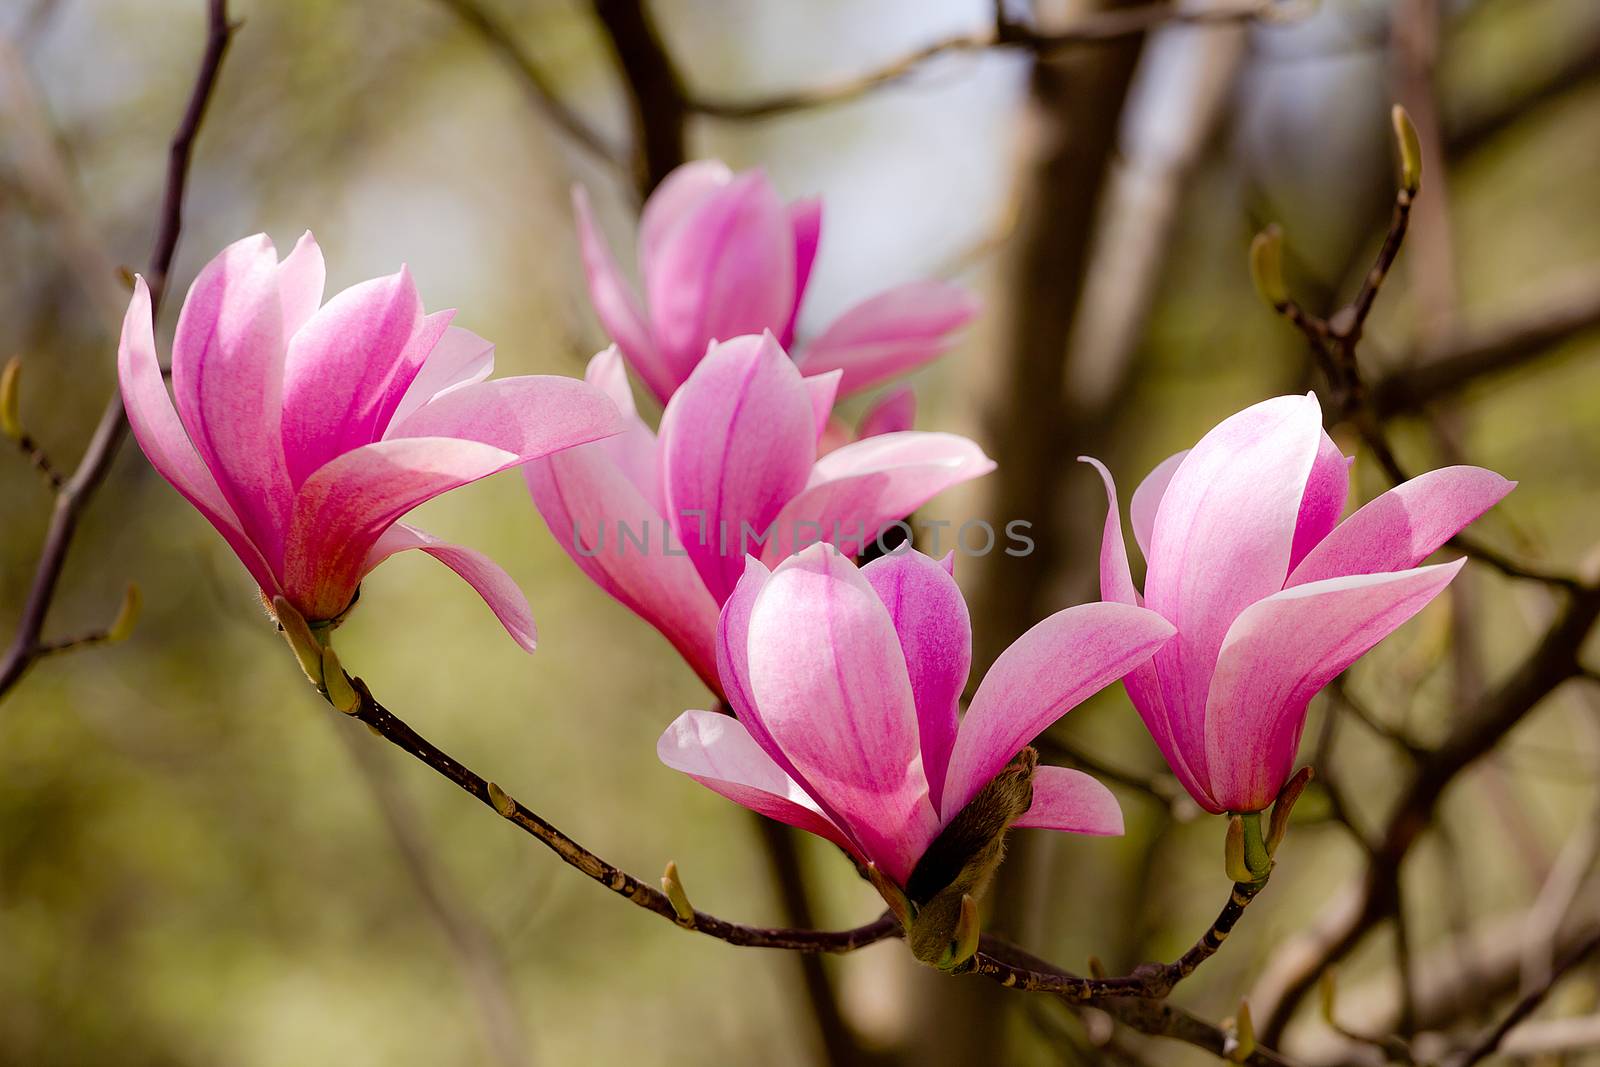 Closeup of magnolia buds